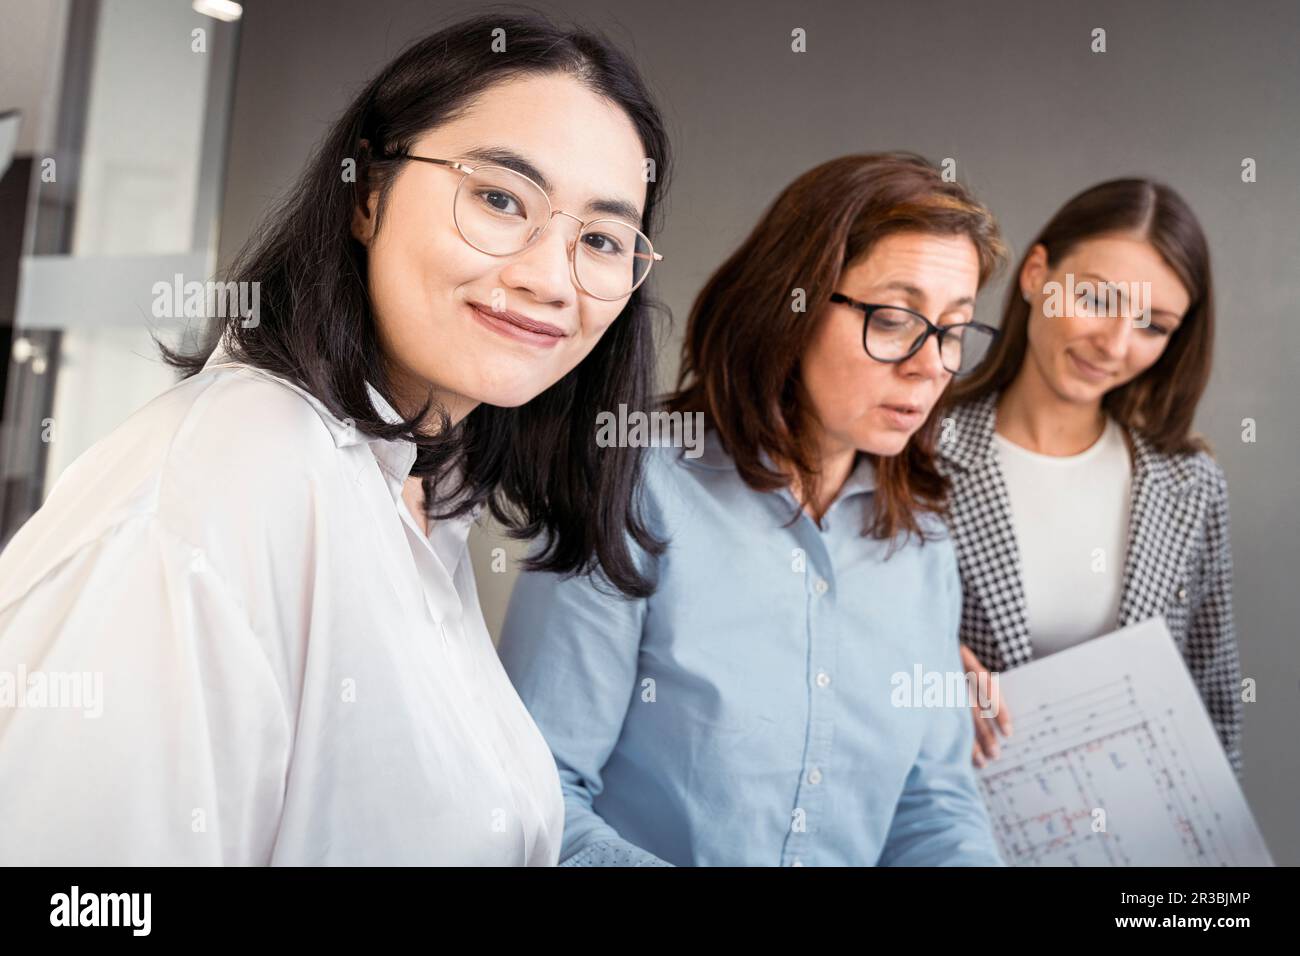 Lächelnde Geschäftsfrau, die mit Kollegen an einem Architekturprojekt arbeitet Stockfoto